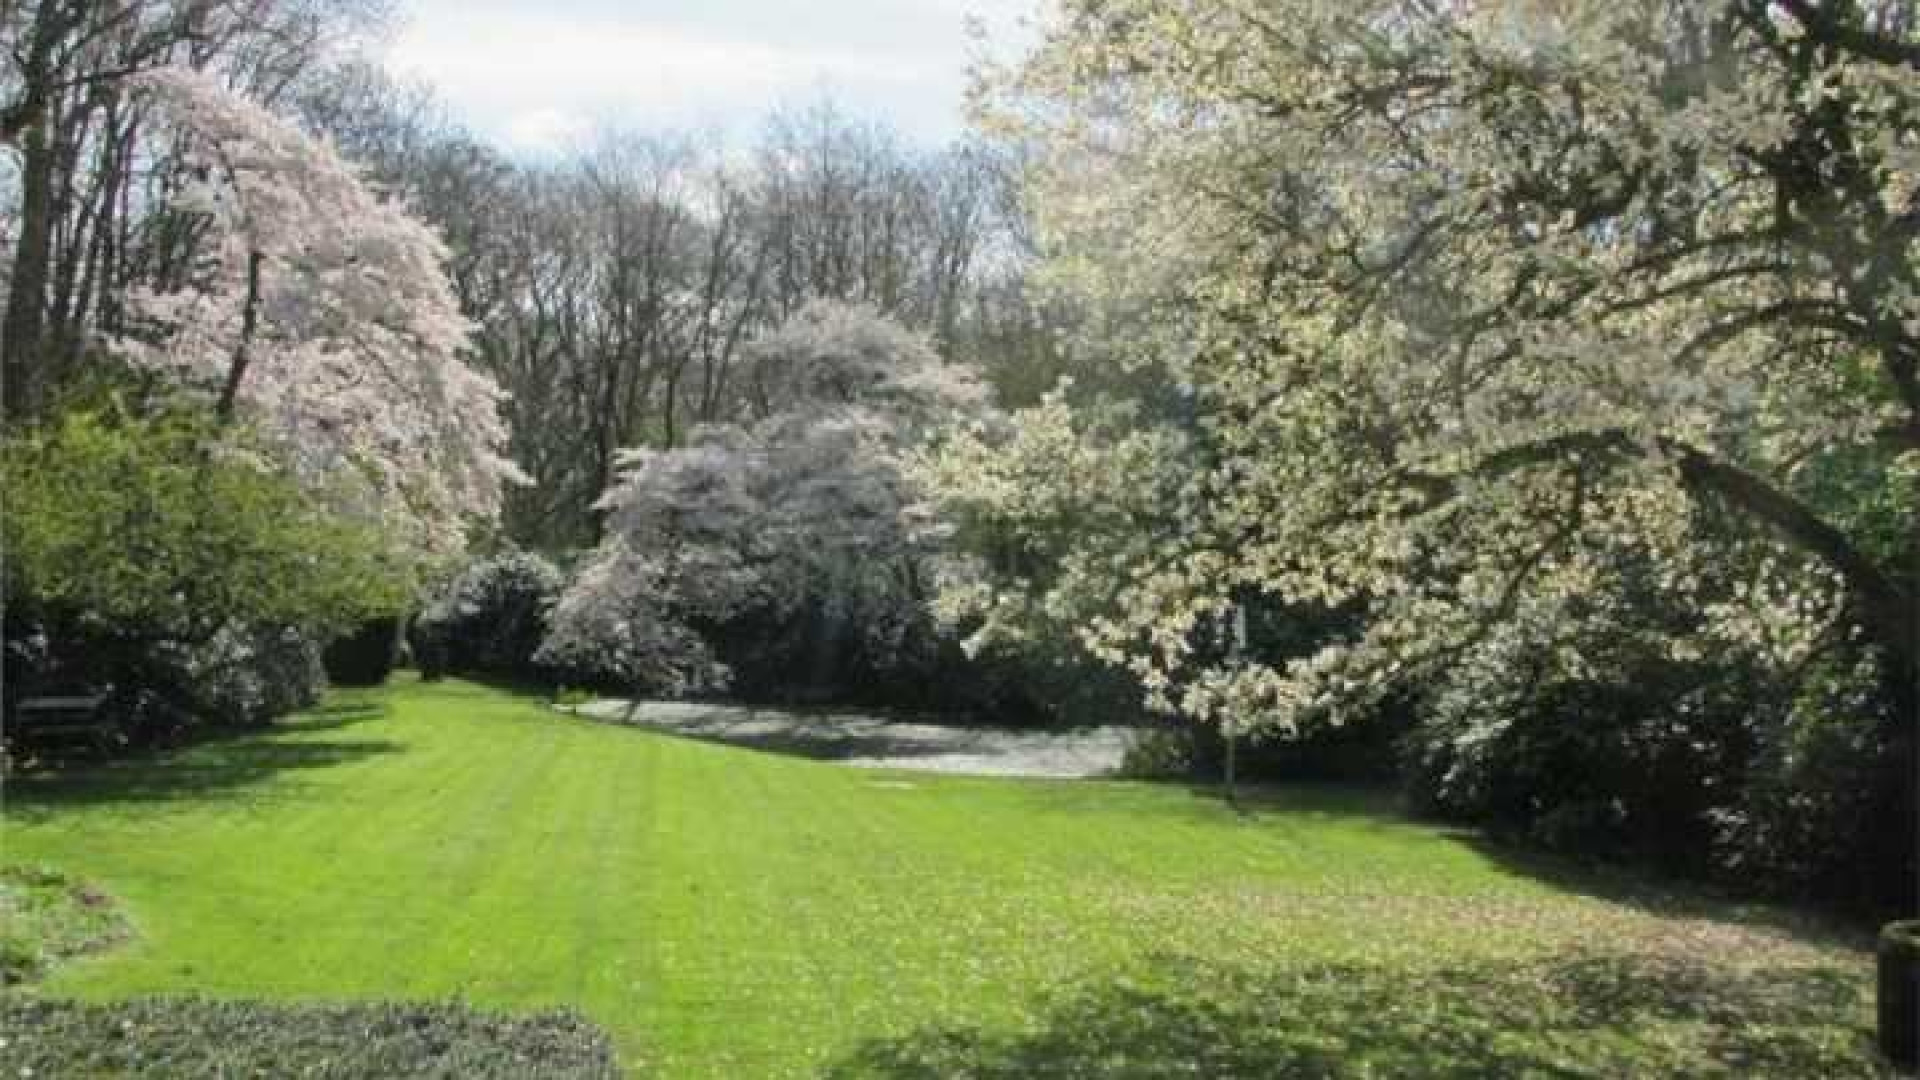 Wassenaarse villa van Neelie Smit Kroes eindelijk na jaren verkocht. Zie foto's 21